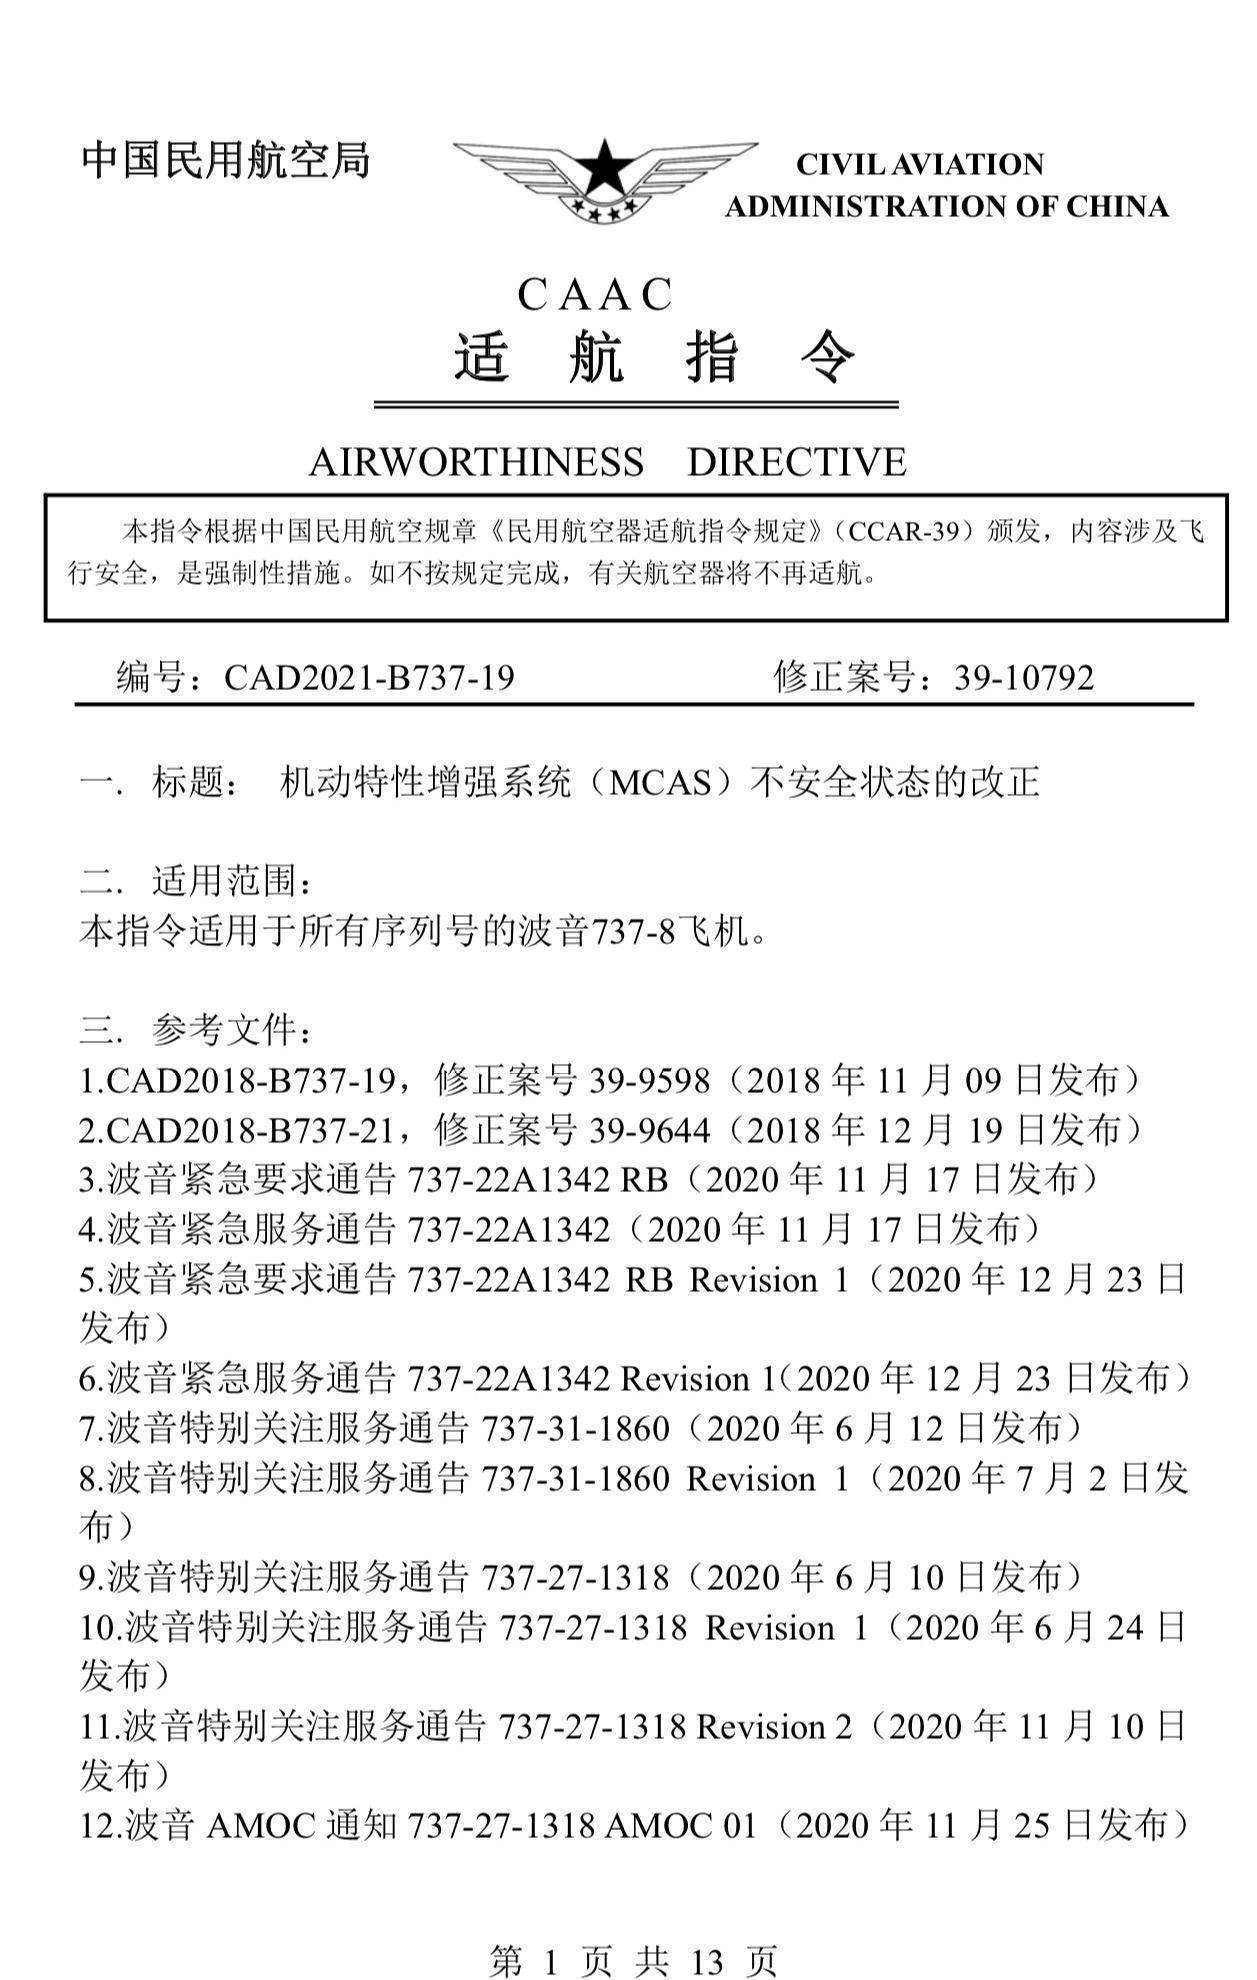 波音737max在华重获适航许可 专家称不意味着立刻复飞 南都 中国民航局 飞行员